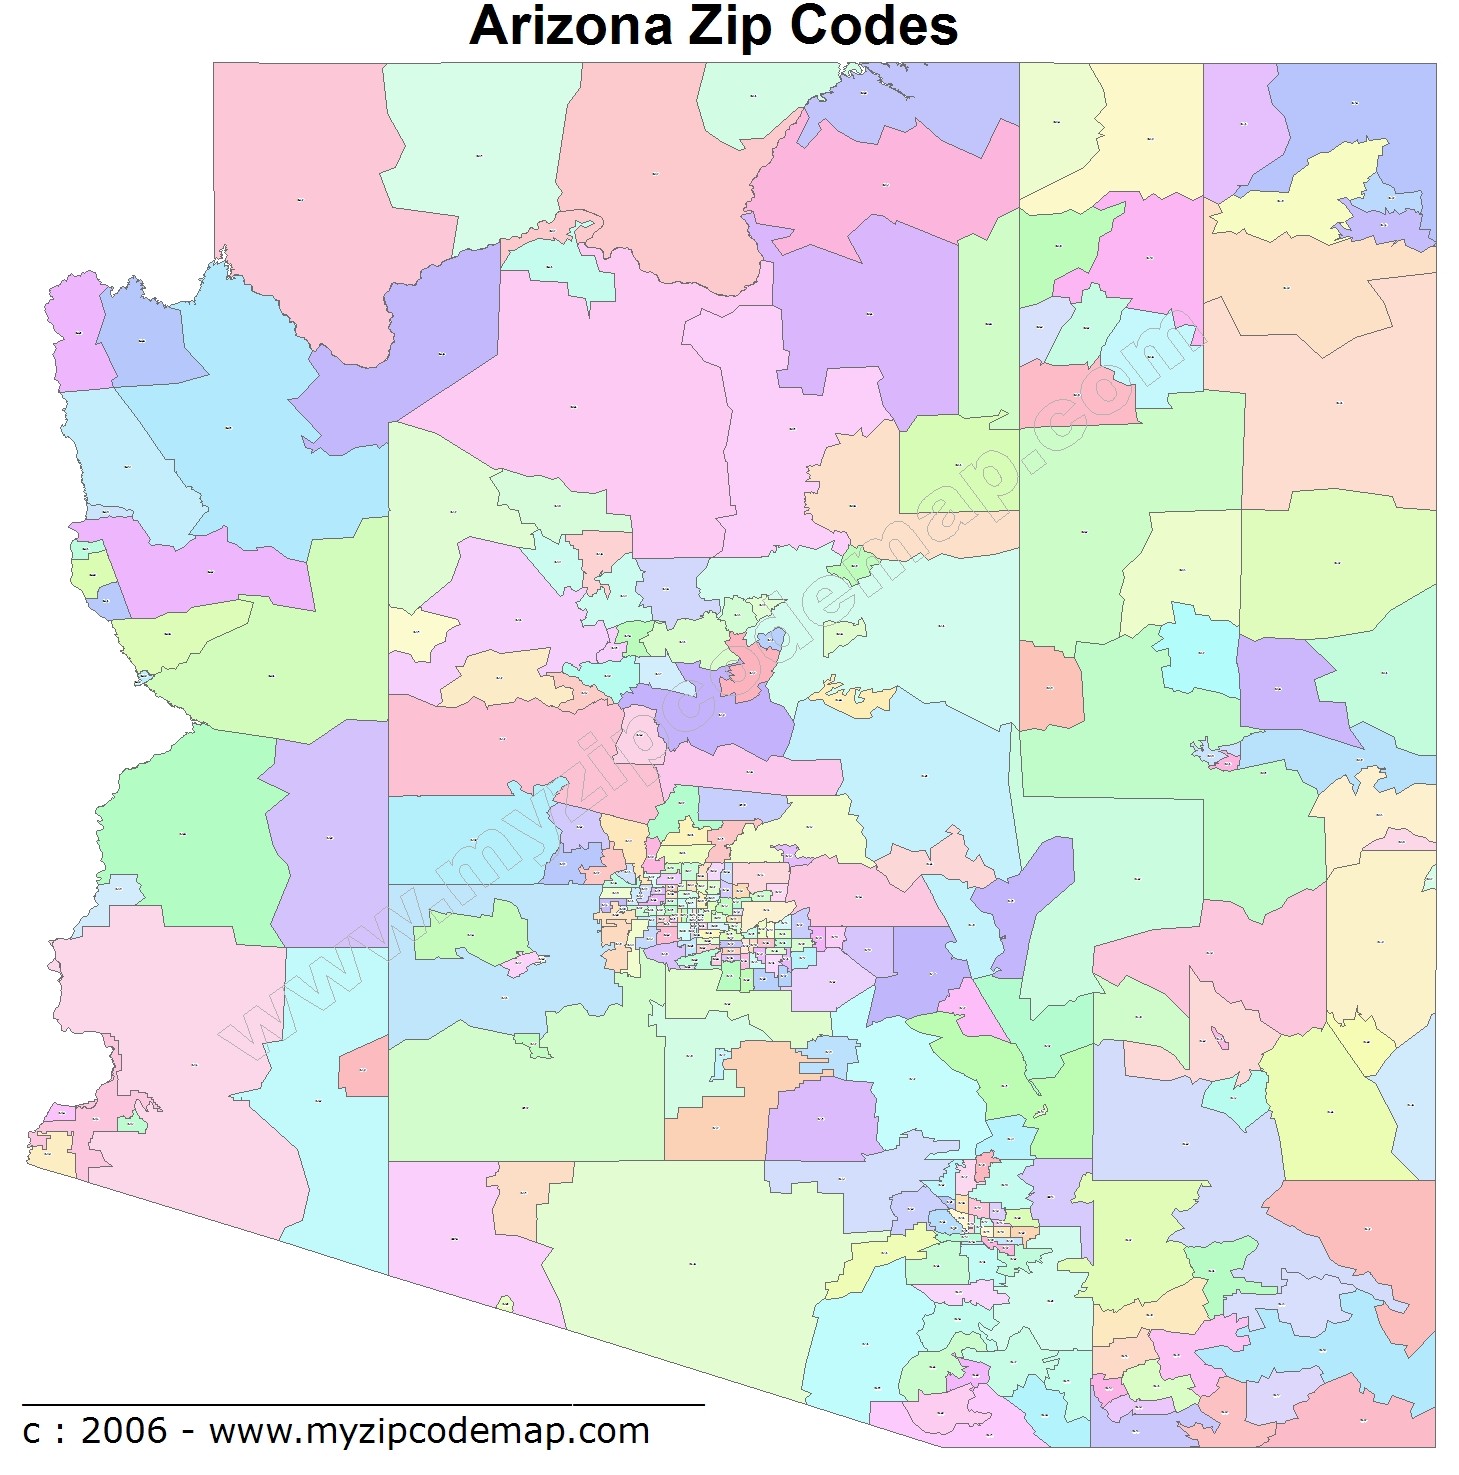 Arizona Zip Code Maps Free Arizona Zip Code Maps 9343